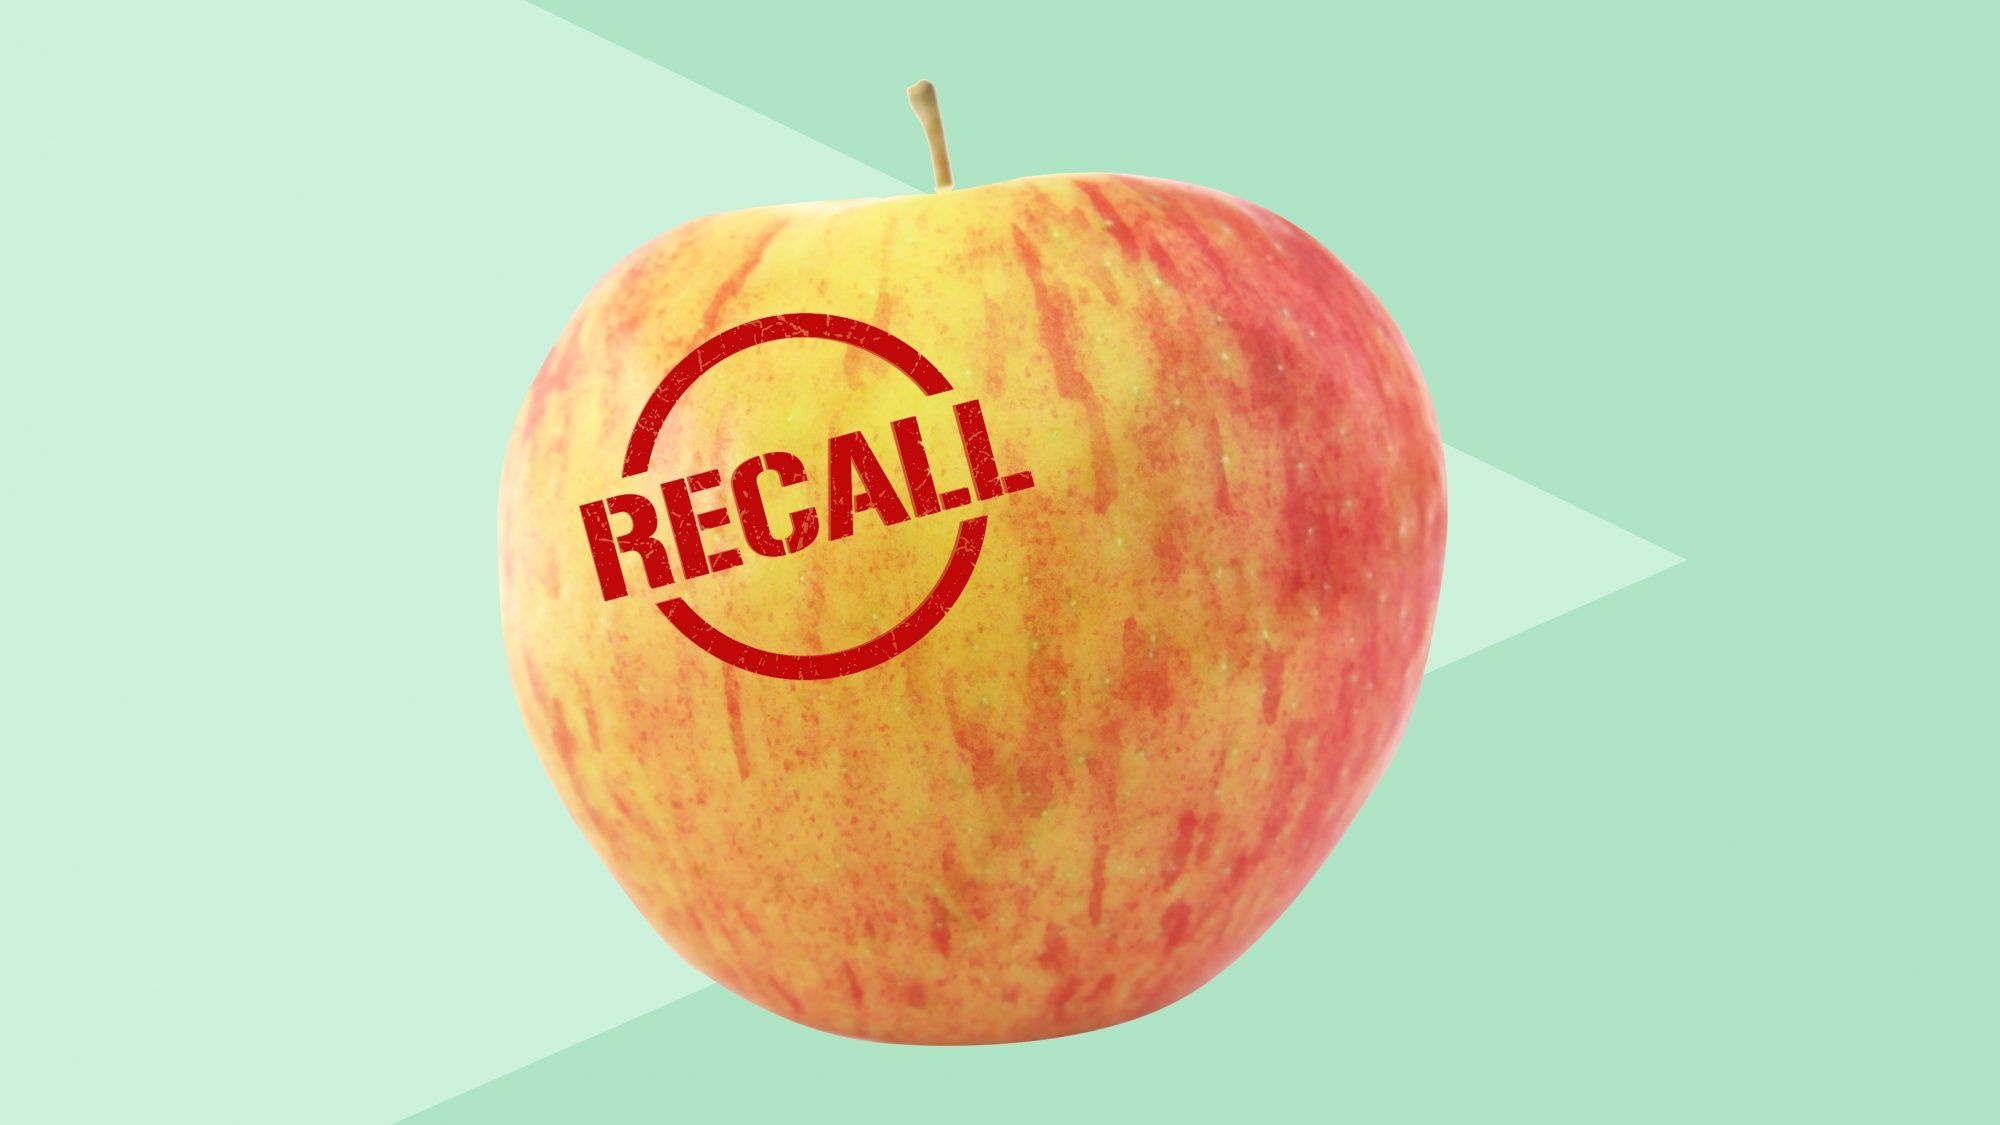 リステリア菌汚染の可能性をめぐって、人気のある6つのリンゴの品種がリコールされています。